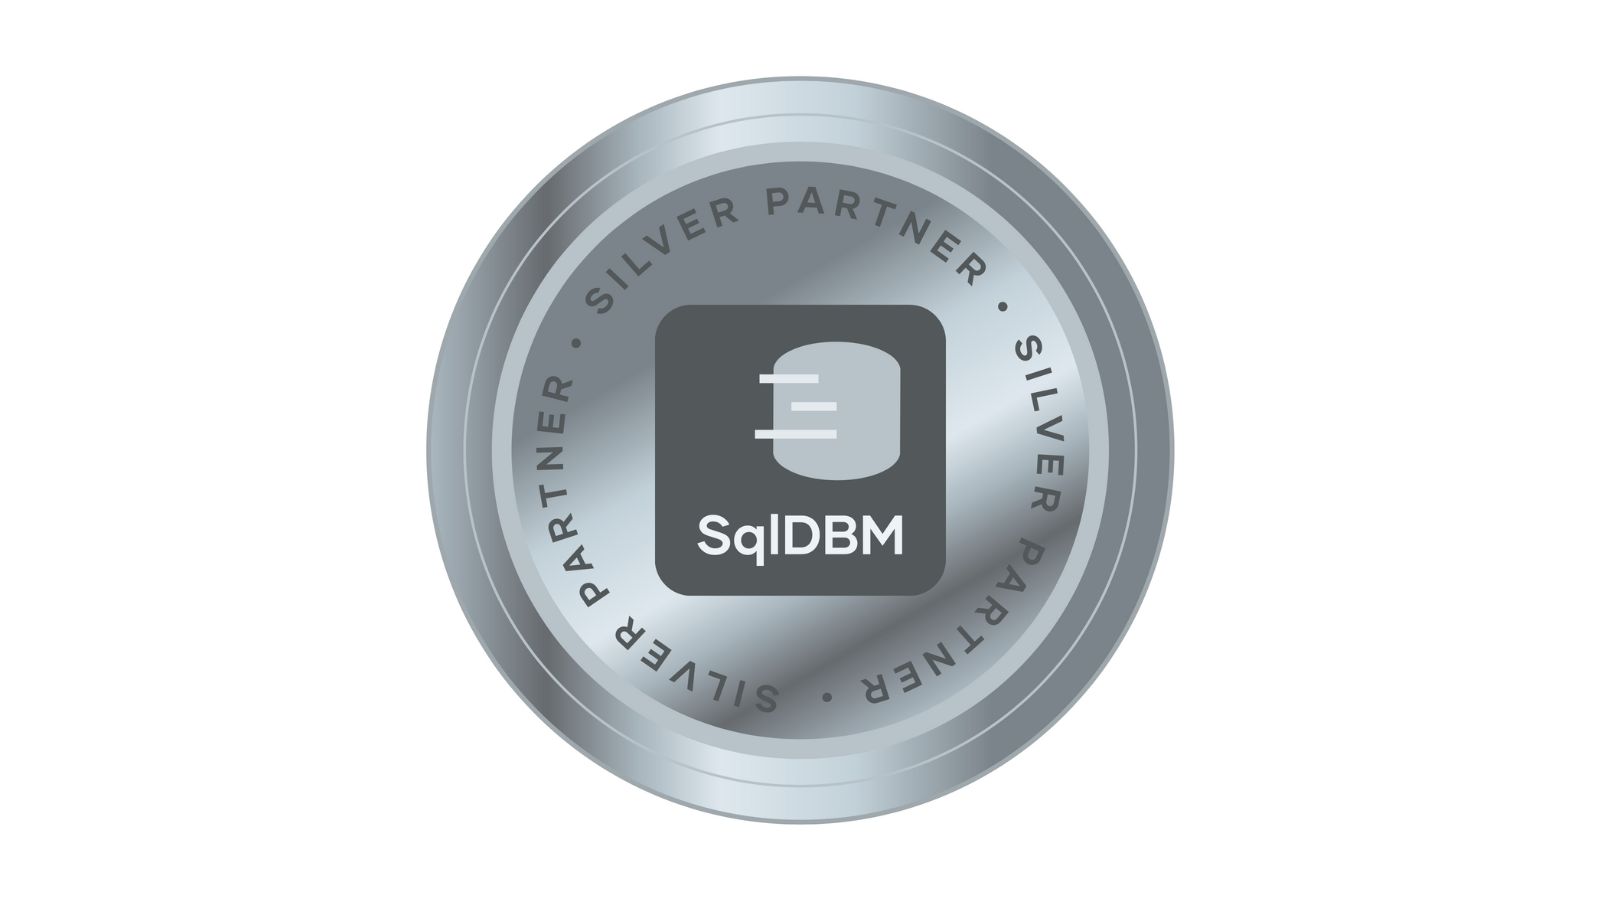 het logo van Silver Partner SqlDBM